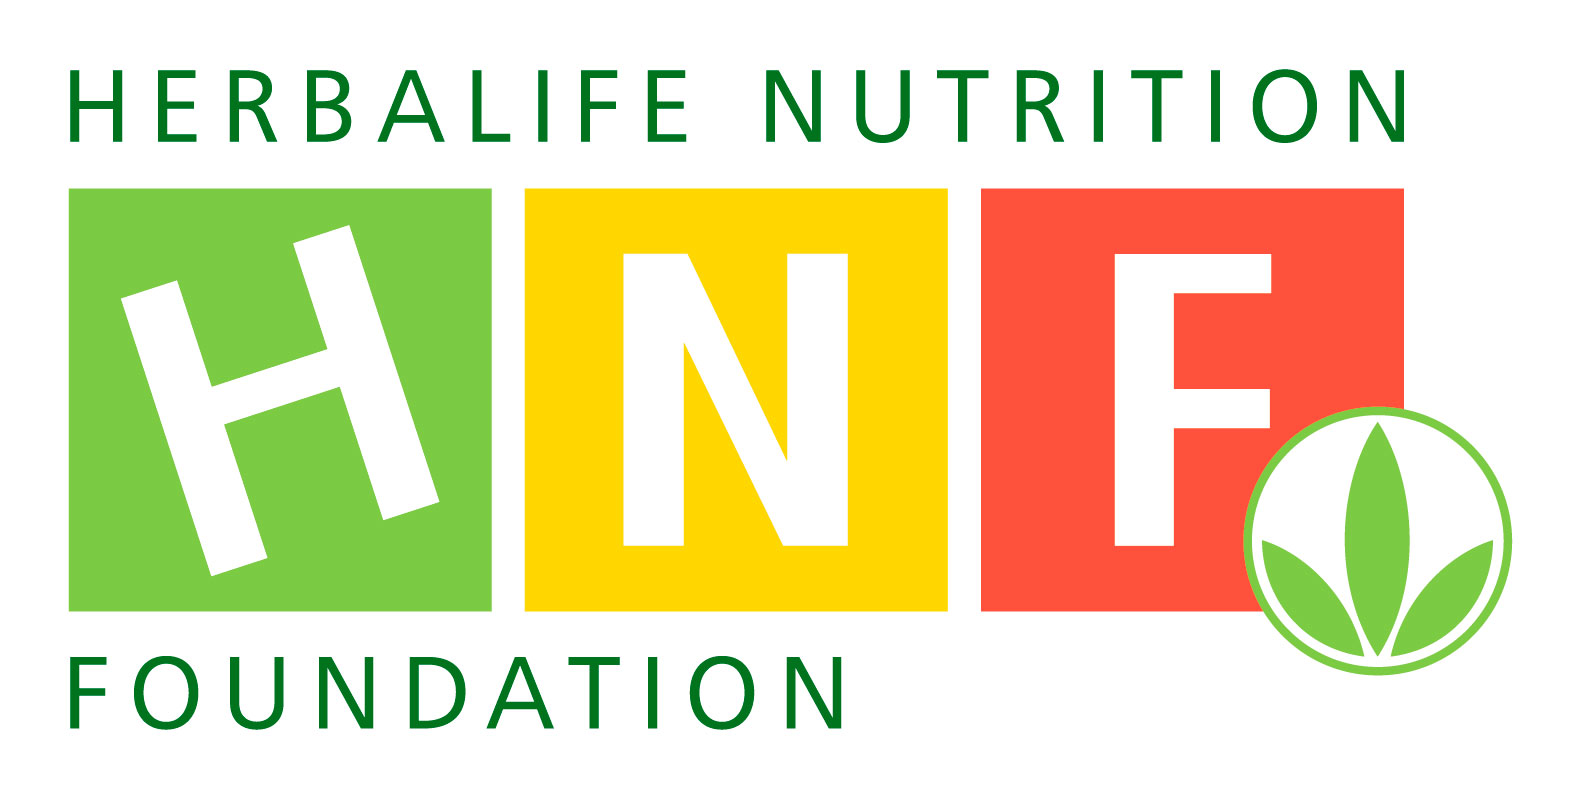 Herbalife Nutrition Foundation entregó un donativo de $100,000 dólares a Comedor Santa María